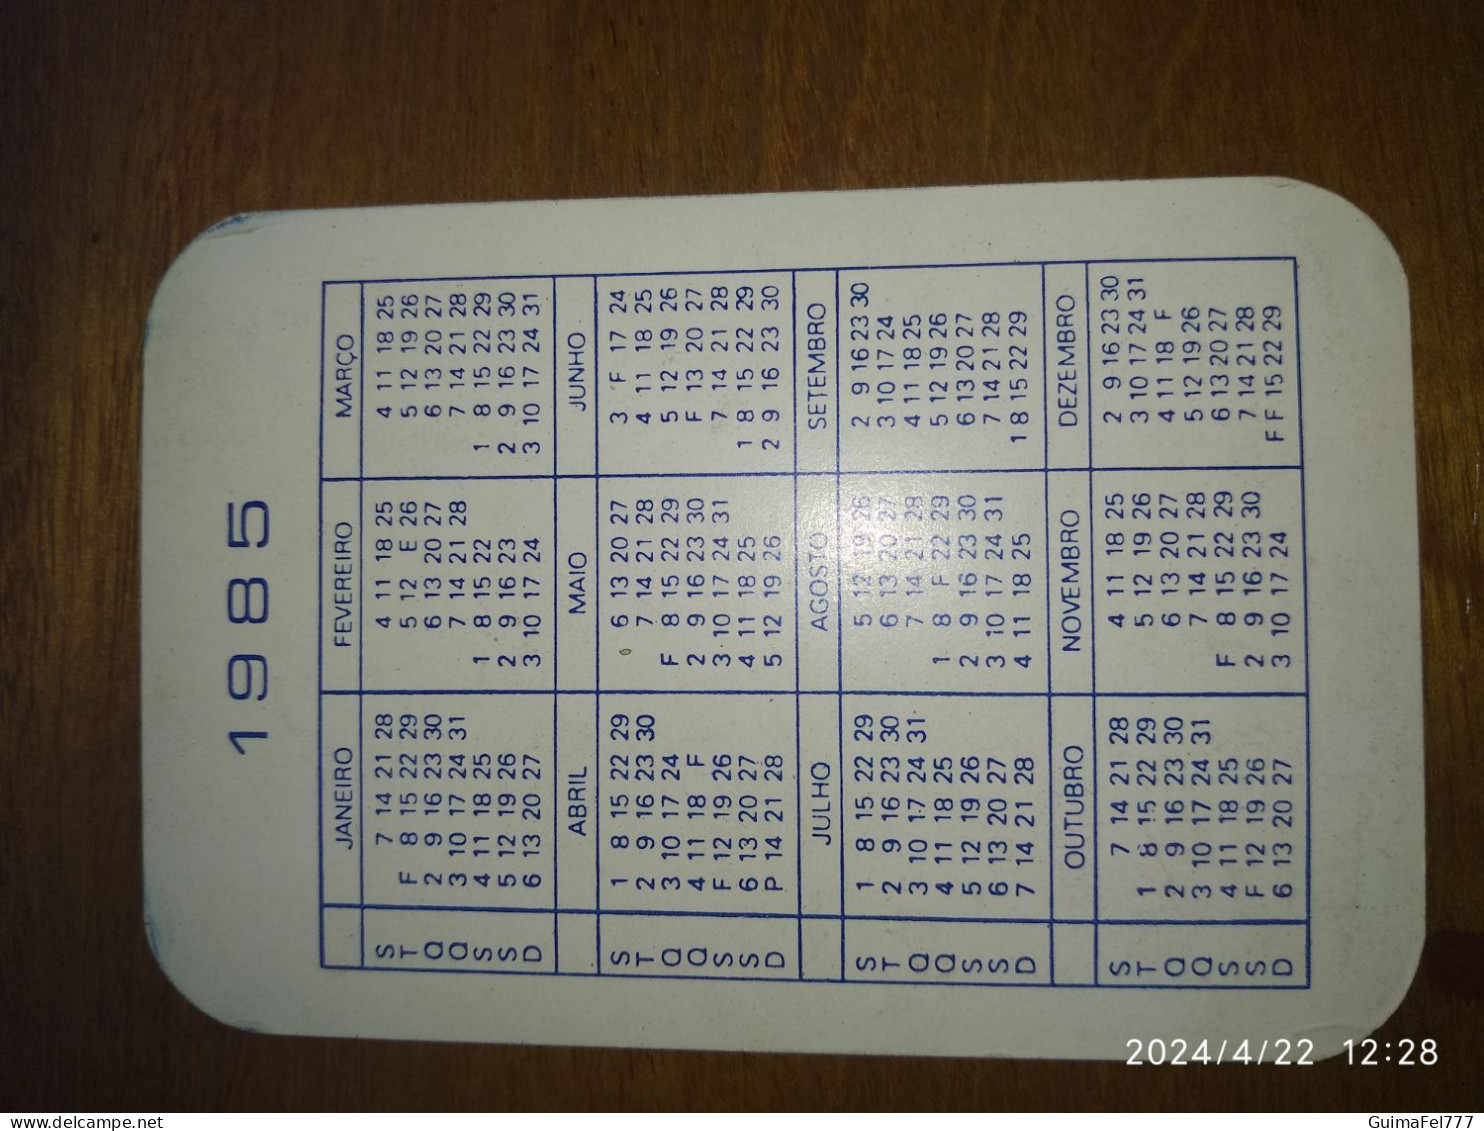 Calendário Lubrificantes ESSO - Kleinformat : 1981-90